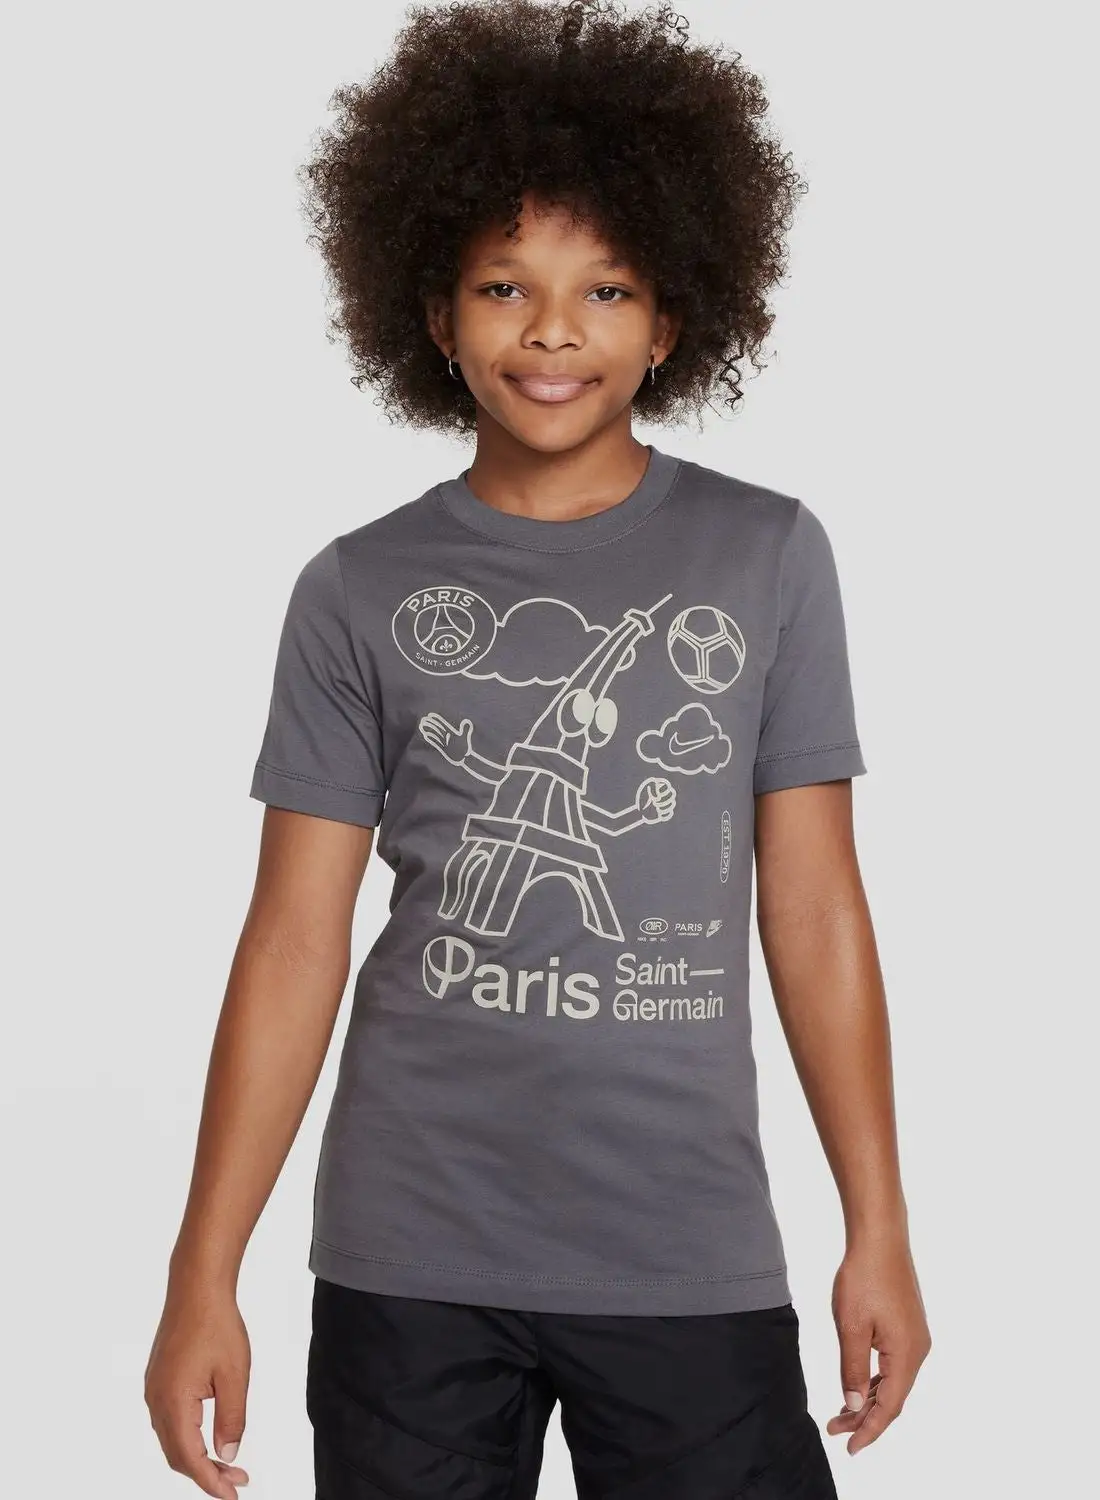 Nike Paris Saint Germain Air T-Shirt